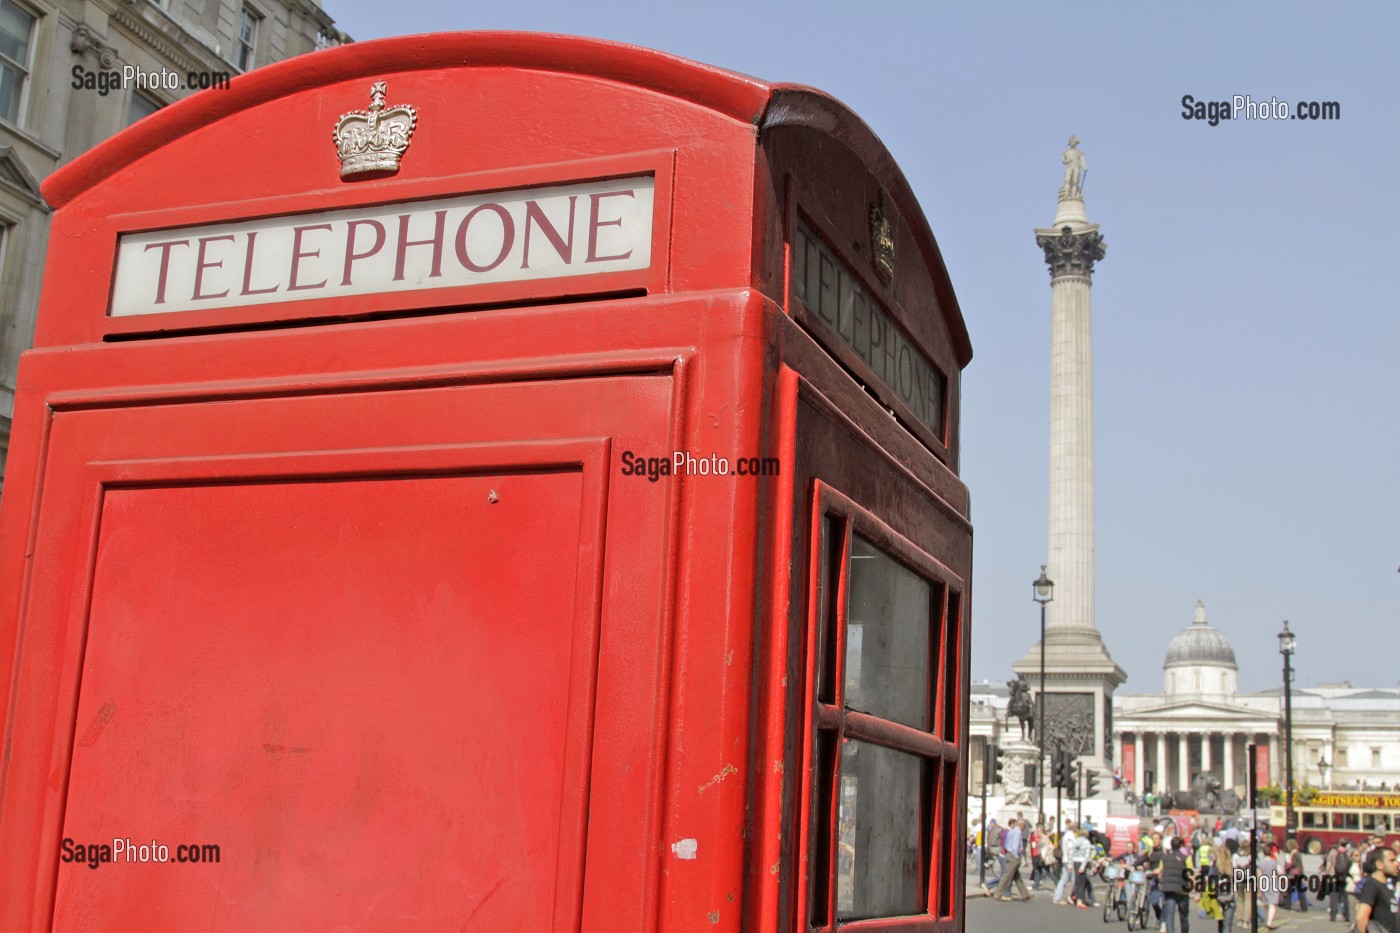 CABINE TELEPHONIQUE TRADITIONNELLE PRES DE LA NELSON COLUMN, TRAFALGAR SQUARE, LONDRES, ANGLETERRE 